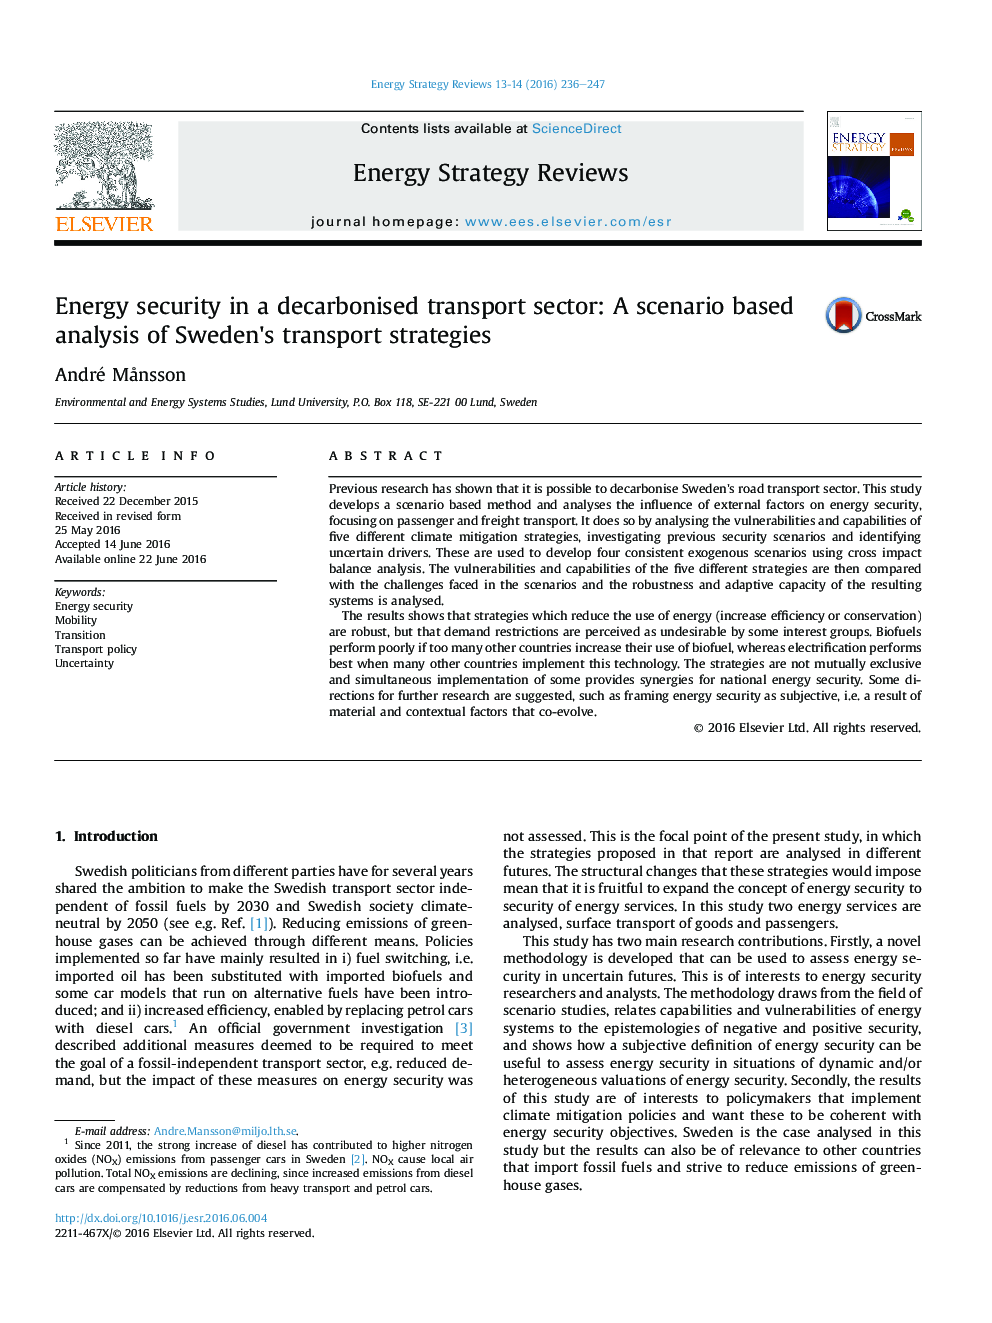 امنیت انرژی در یک بخش حمل و نقل گاز دی اکسید کربن: تجزیه و تحلیل مبتنی بر سناریوی استراتژی های حمل و نقل سوئد